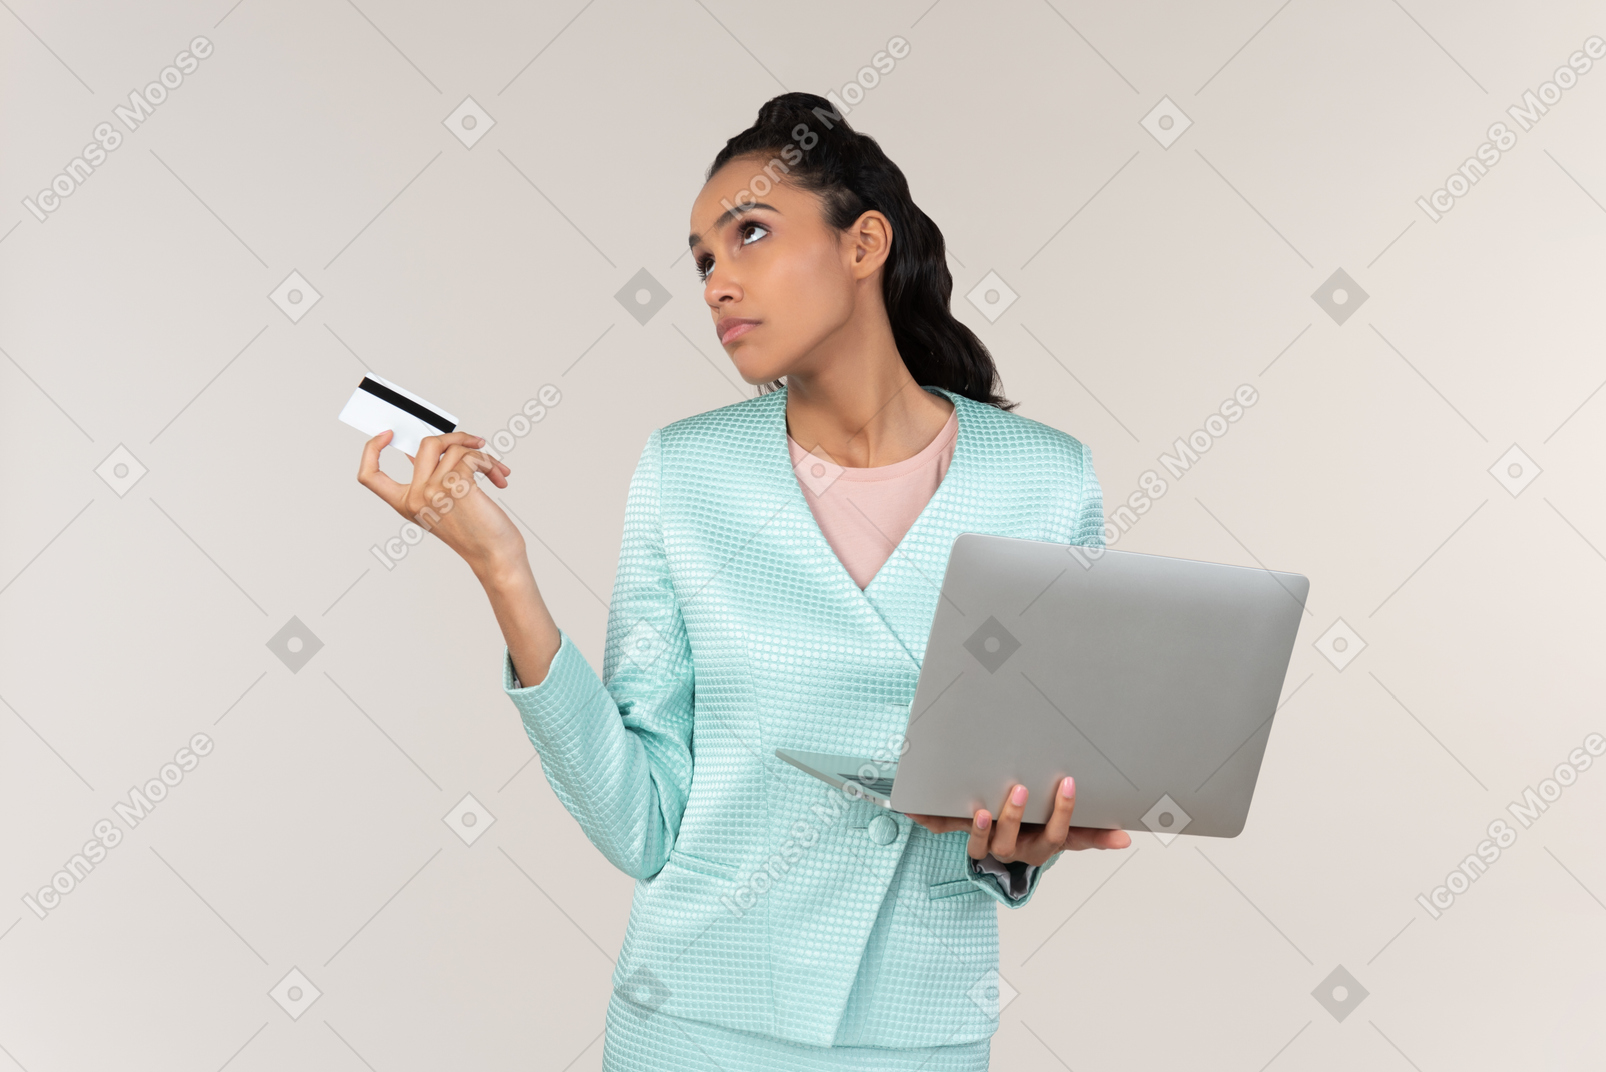 노트북과 은행 카드를 들고 잠겨있는 젊은 afrowoman